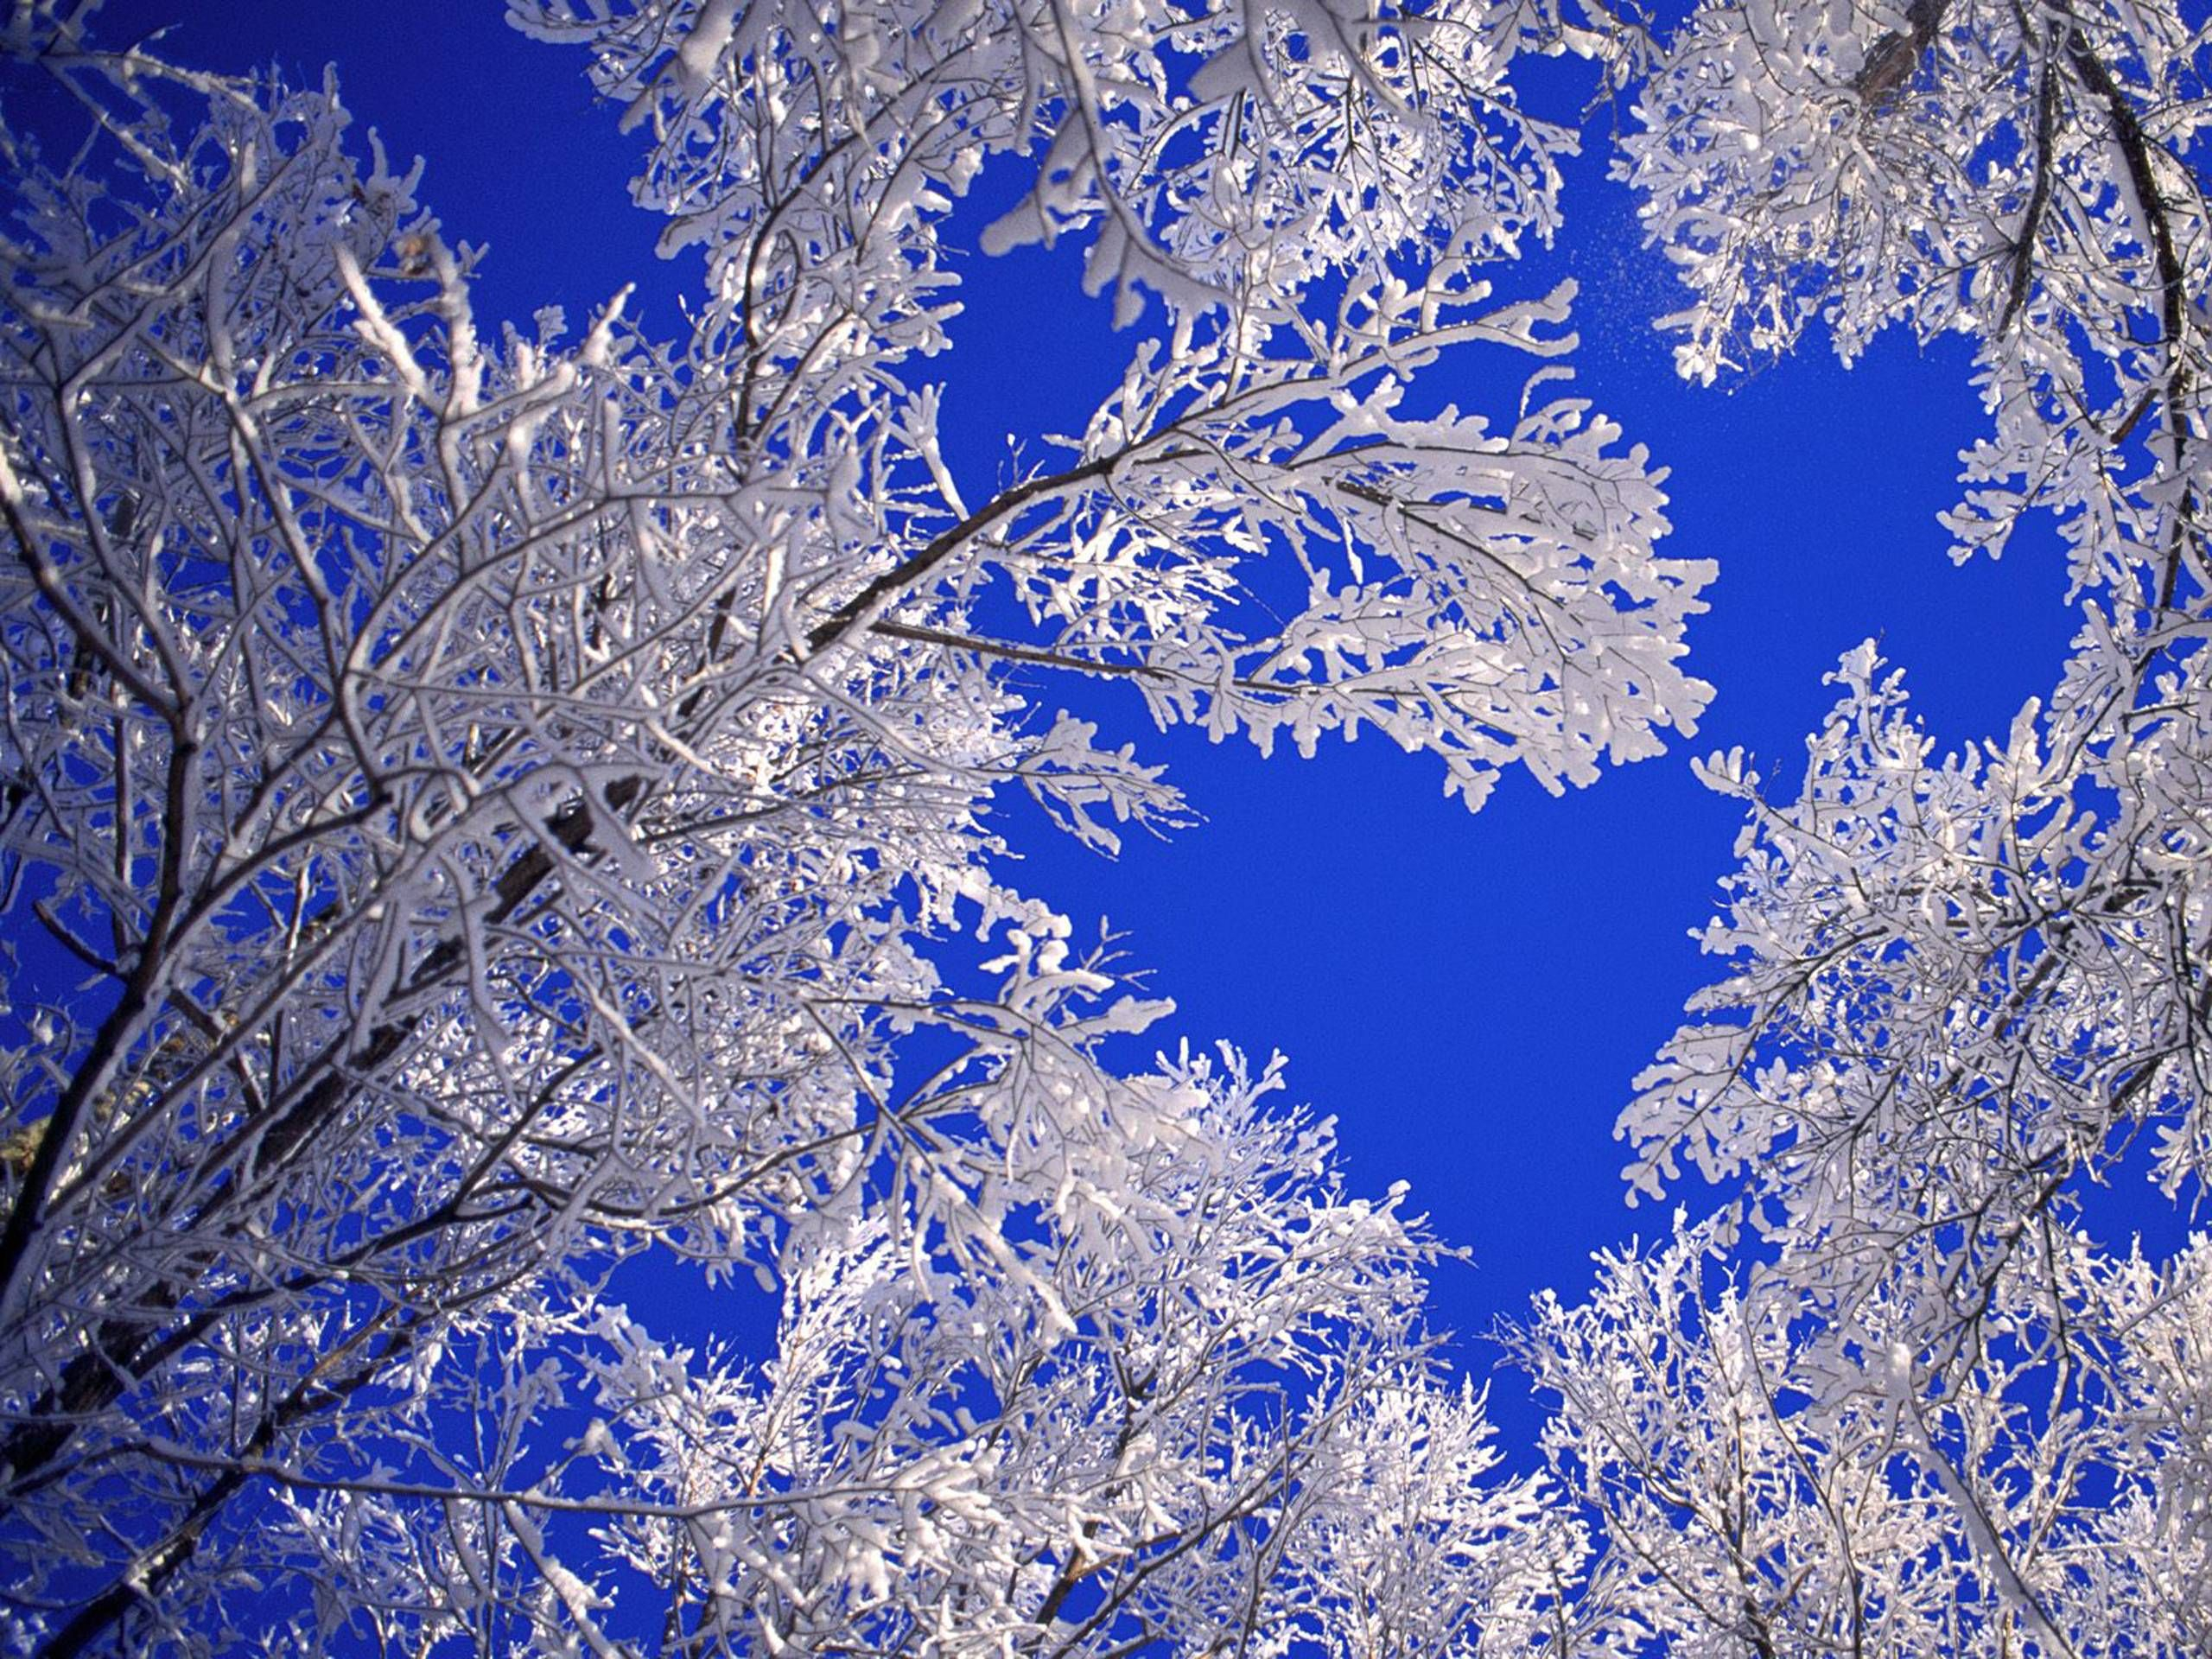 2560x1920 Free Desktop Wallpapers Winter Scenes | Winter wallpaper, Winter pictures, Tree hd wallpaper